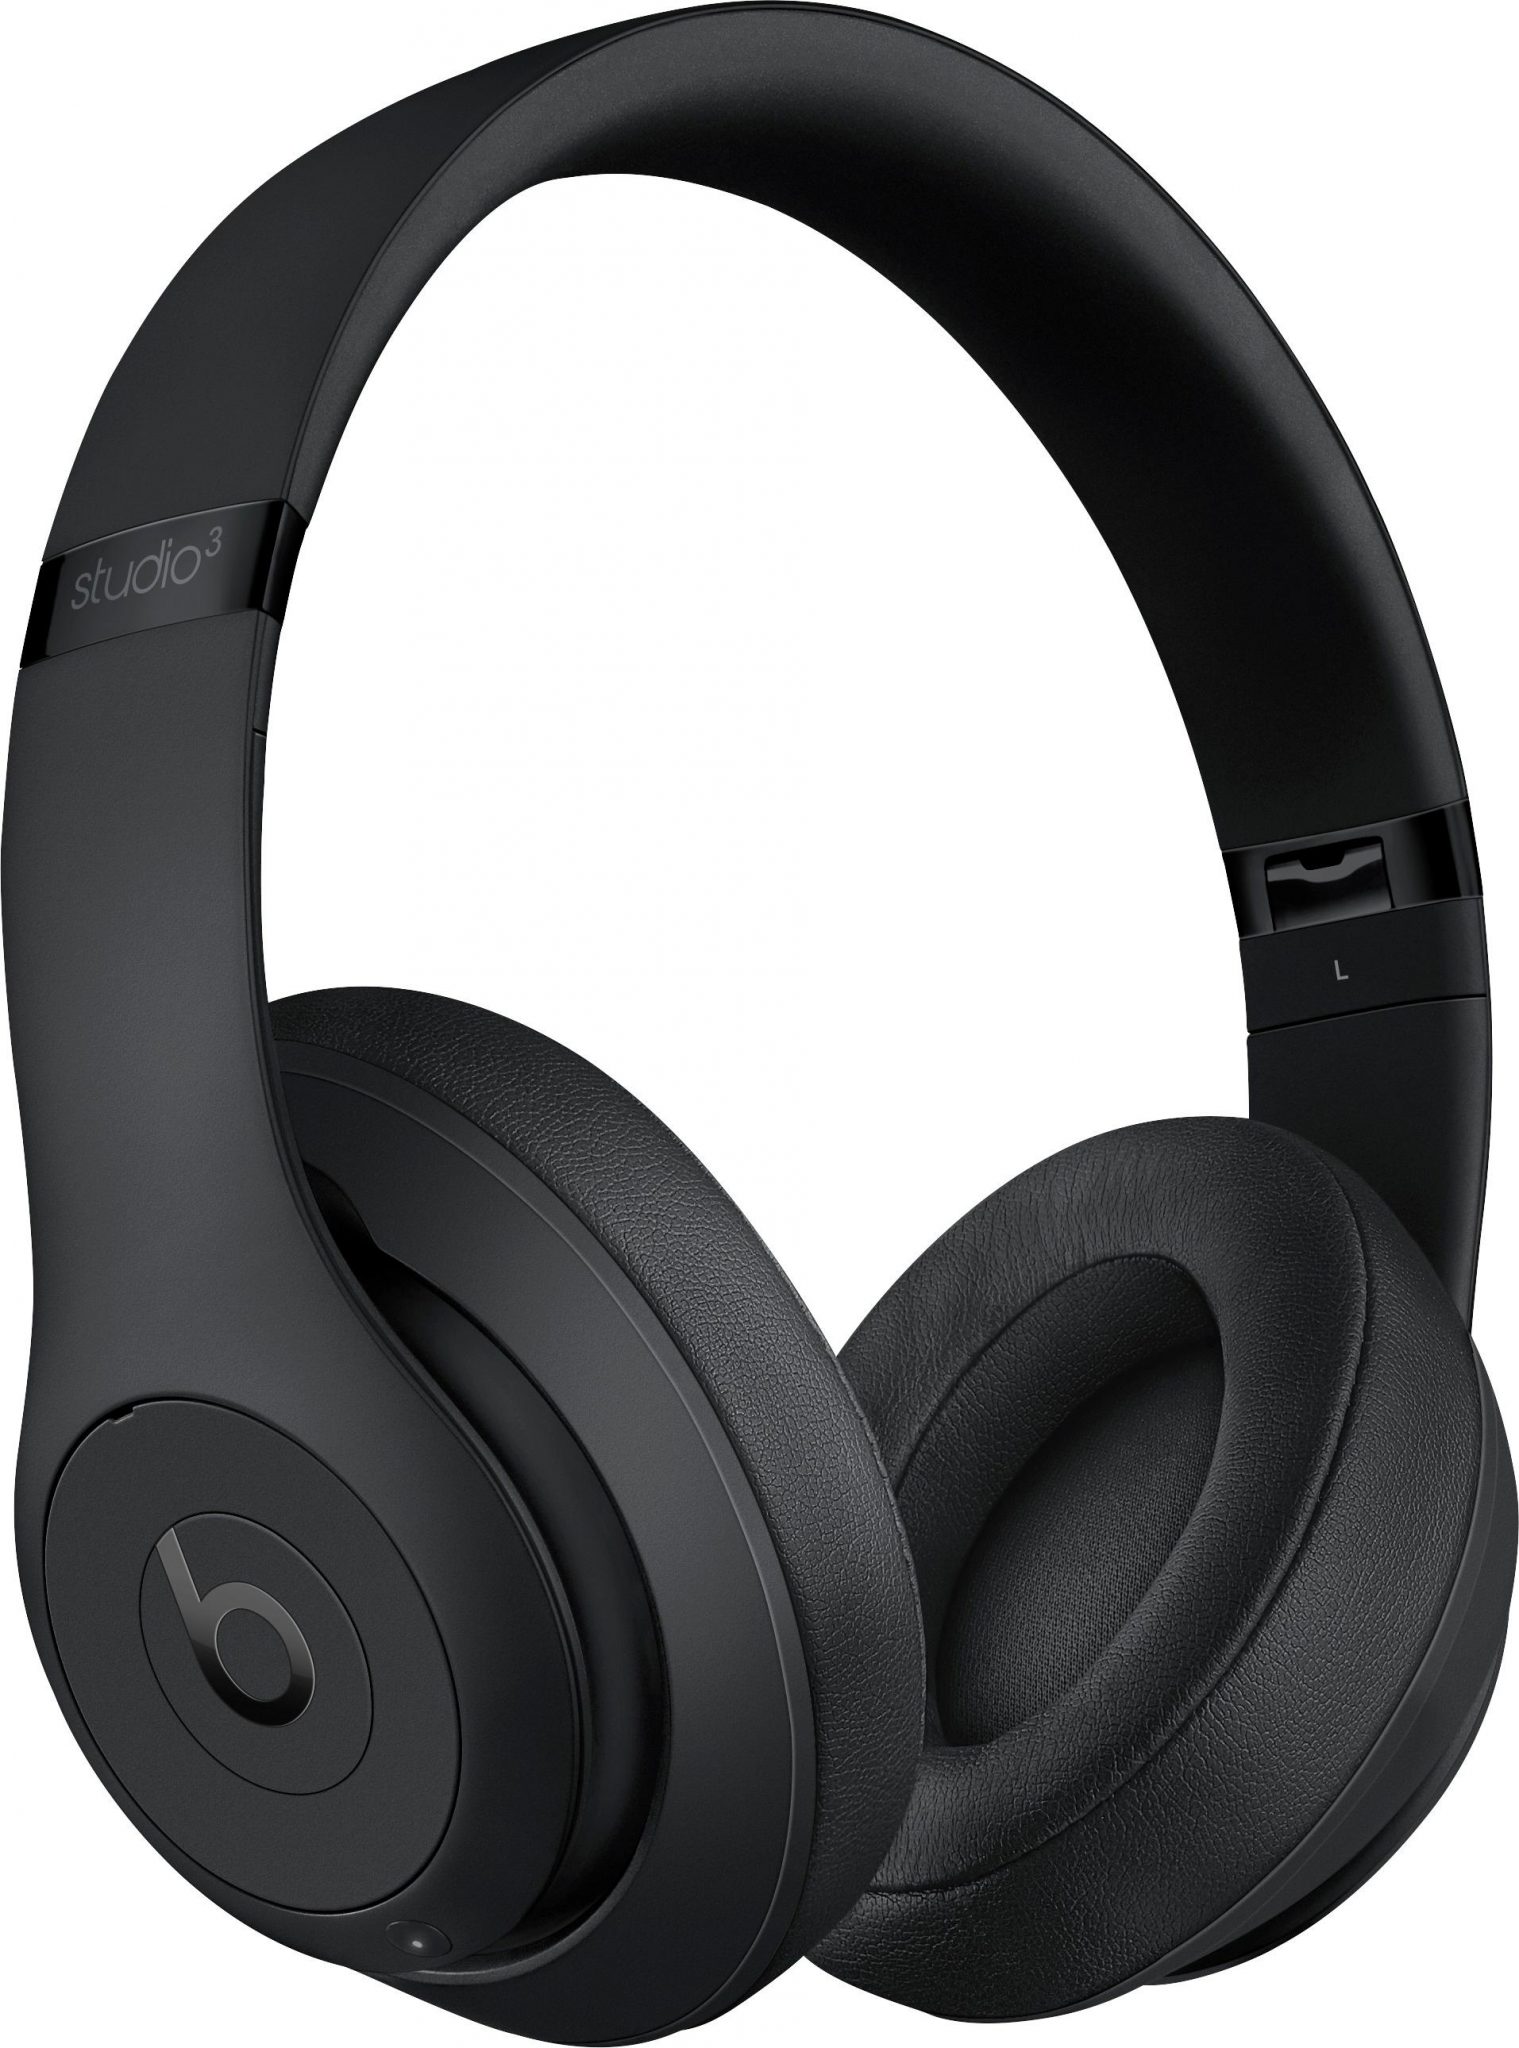 Beats Studio3 Wireless Over-Ear Headphones – Matte Black